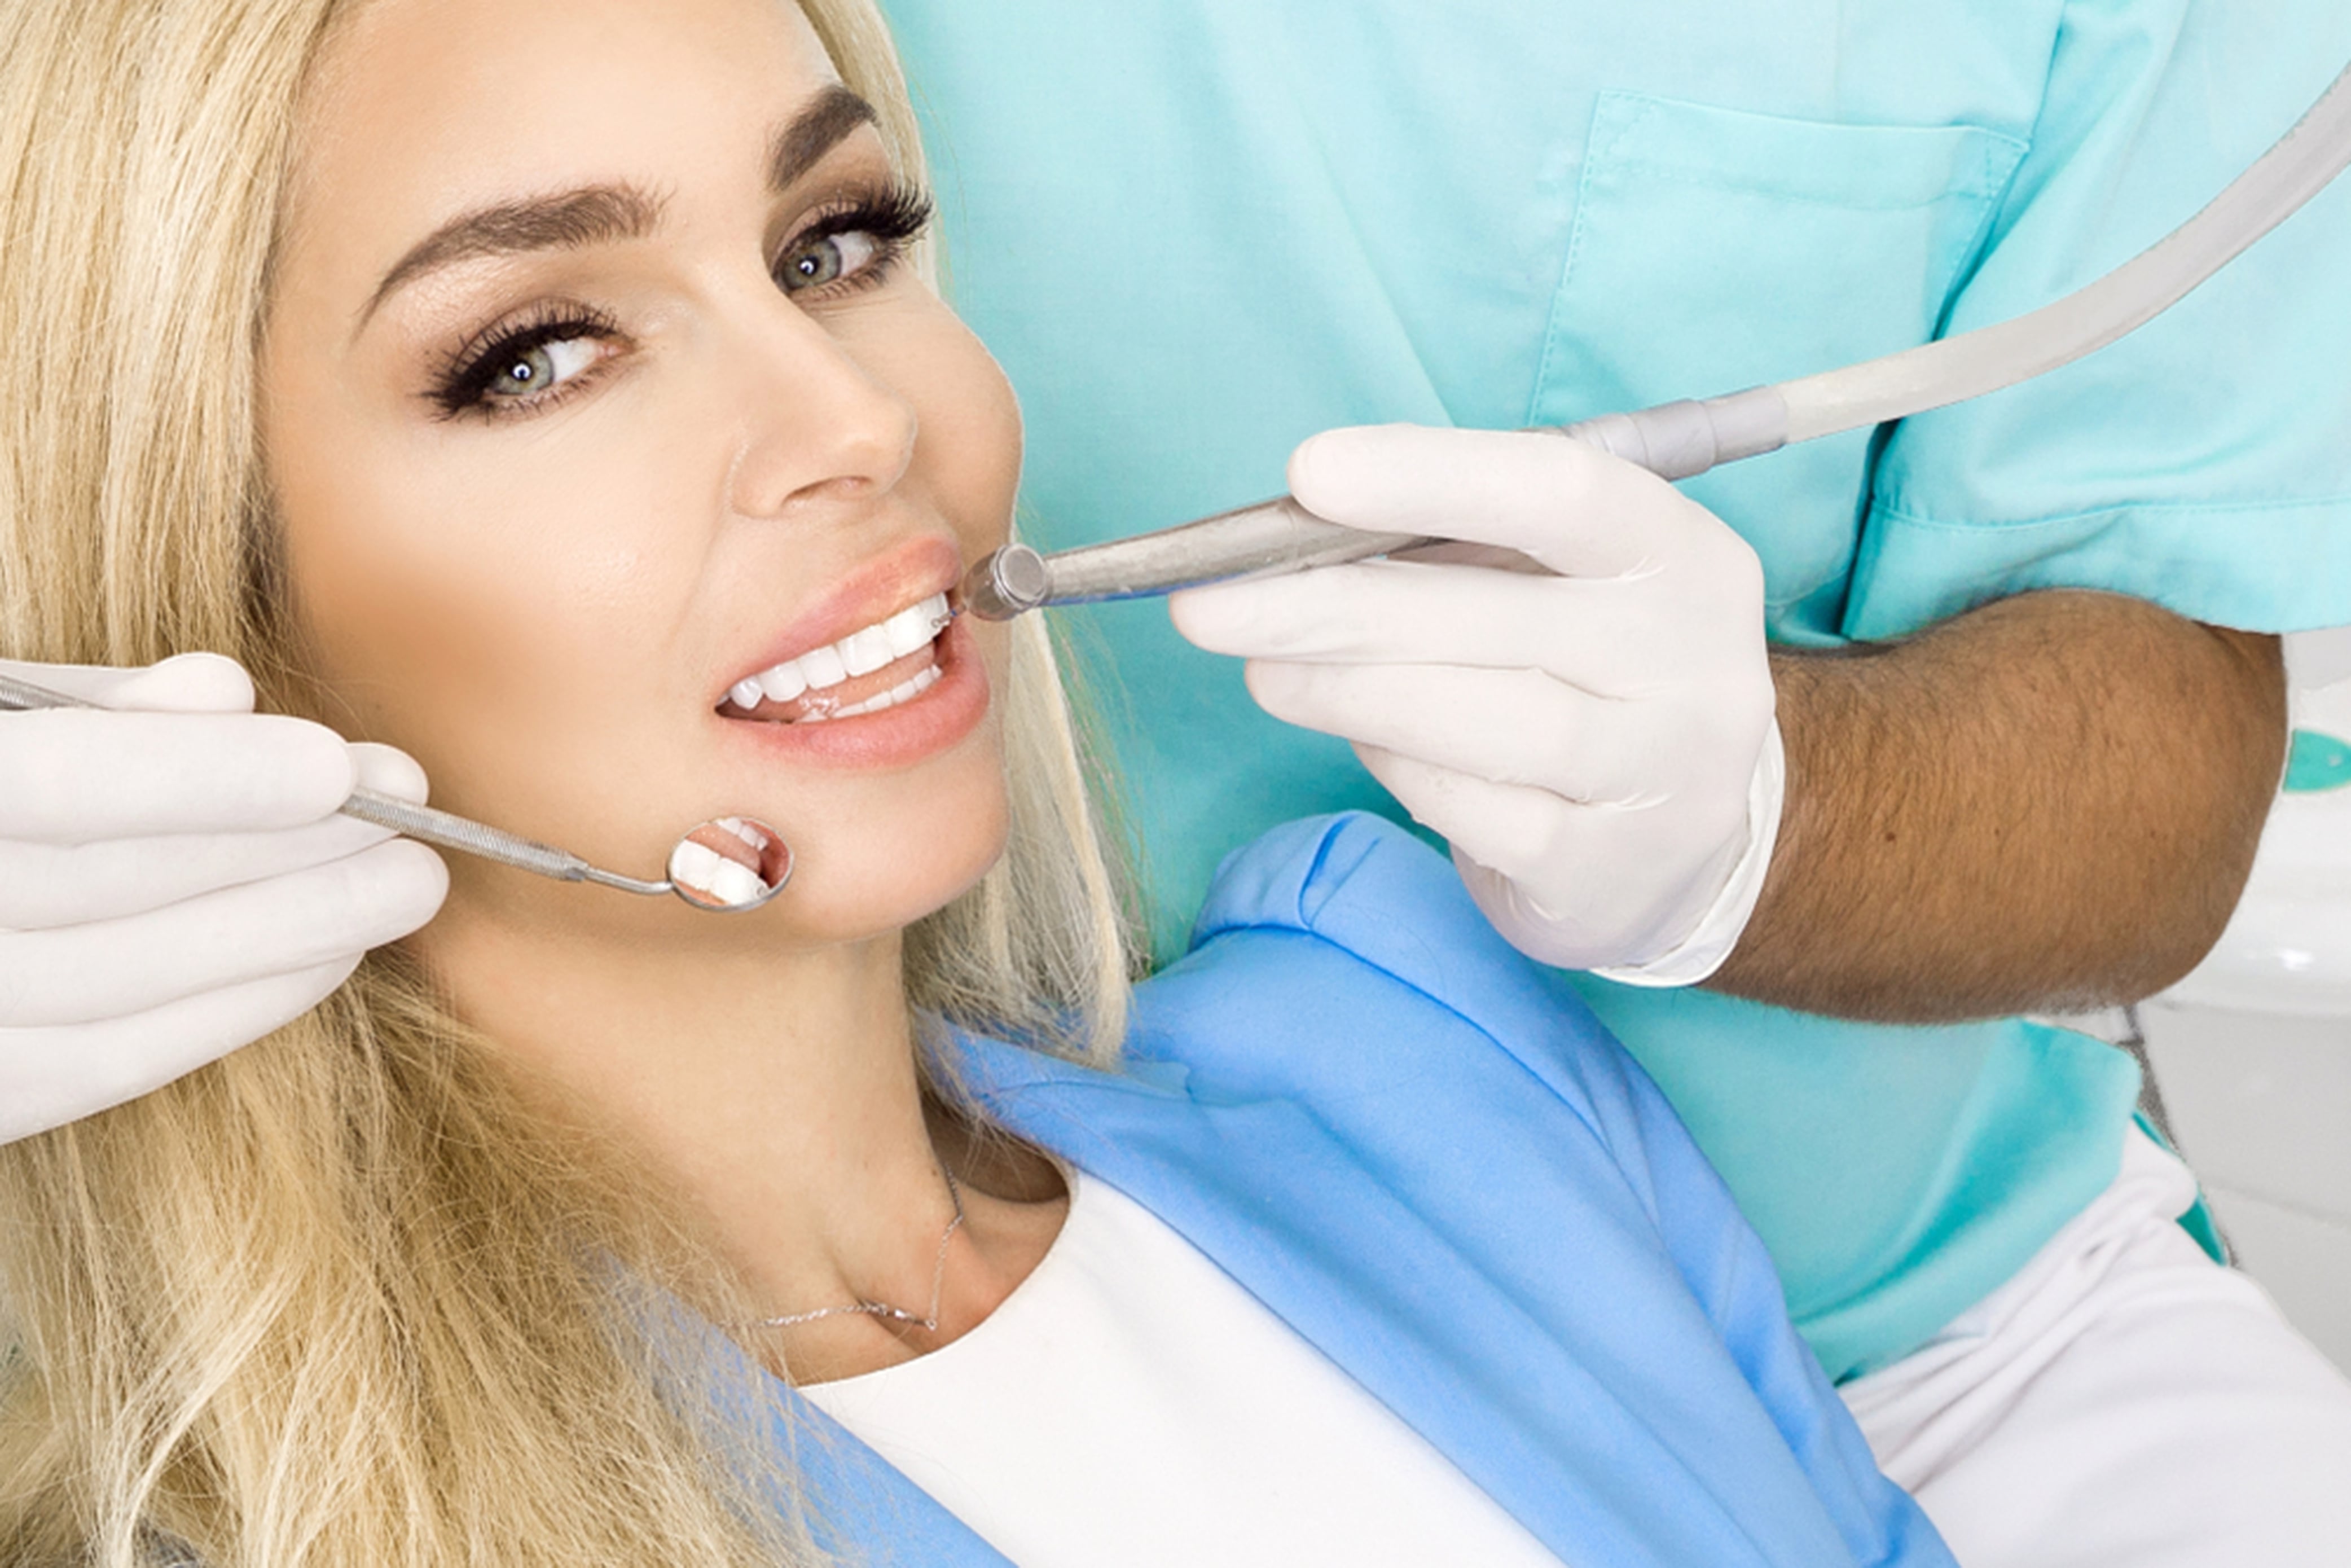 dental veneers pros and cons